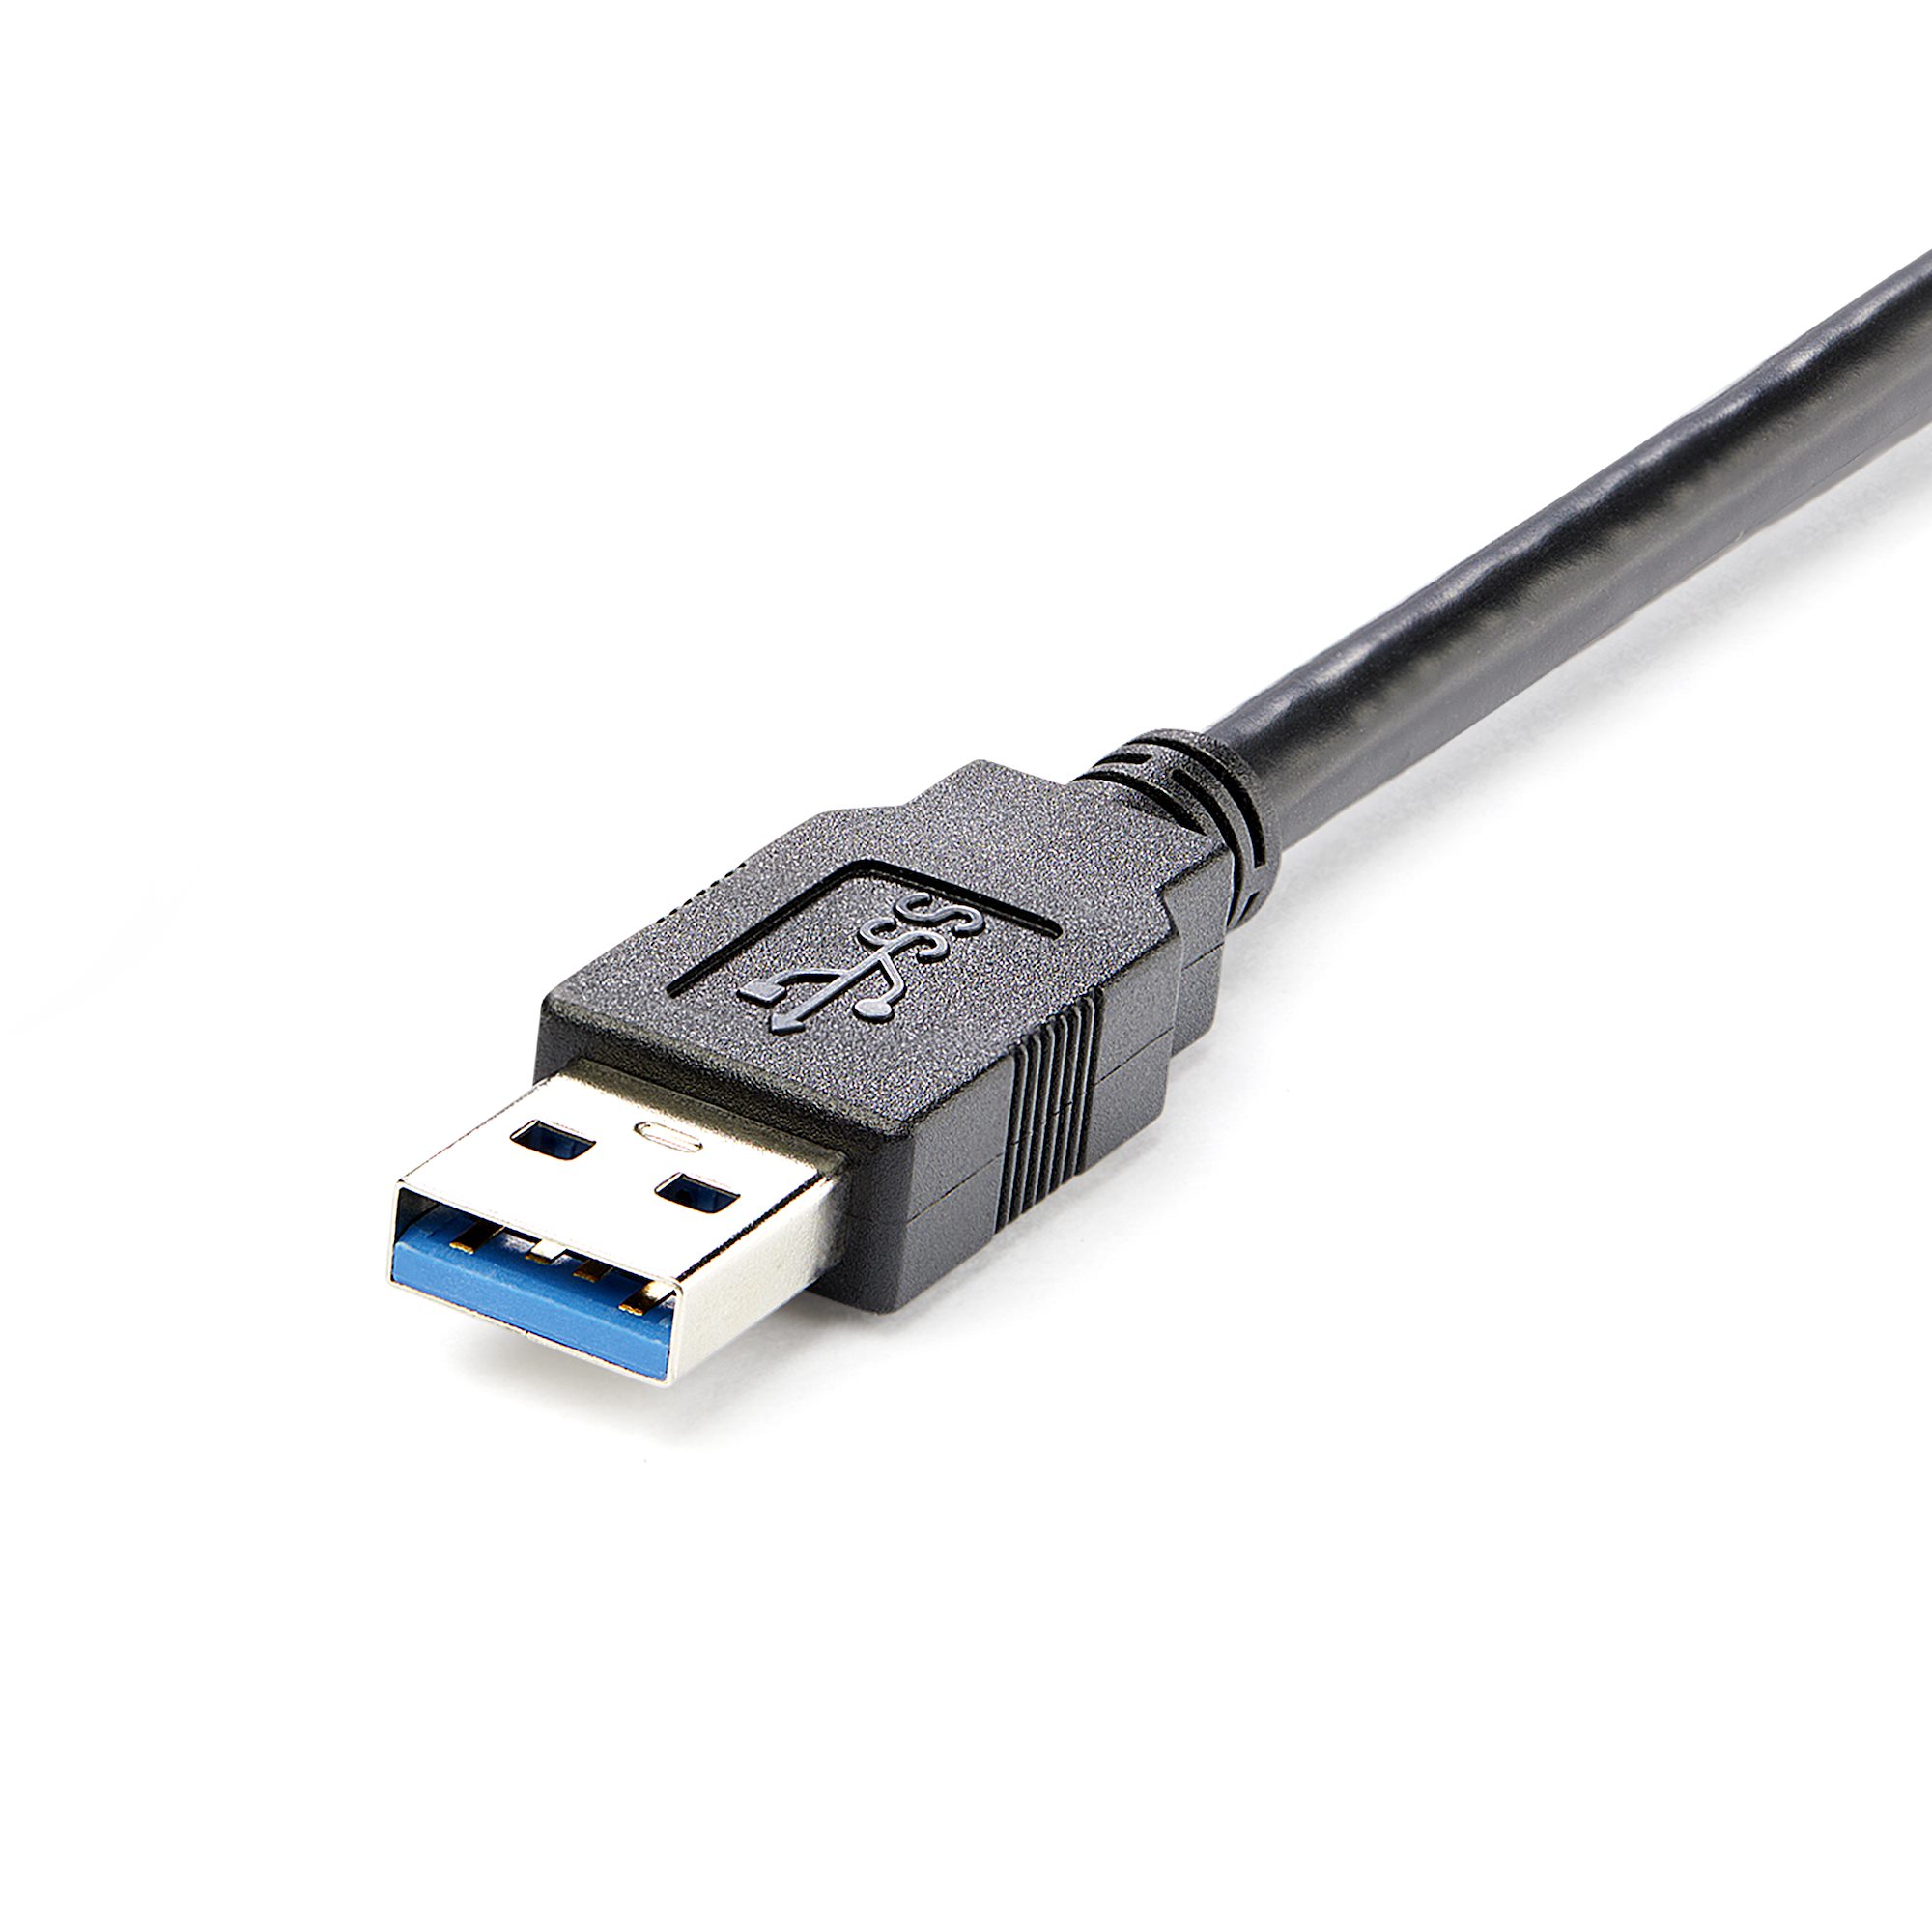 CABLE USB MACHO A USB HEMBRA 1.5Mts EXTENSION ALARGUE 